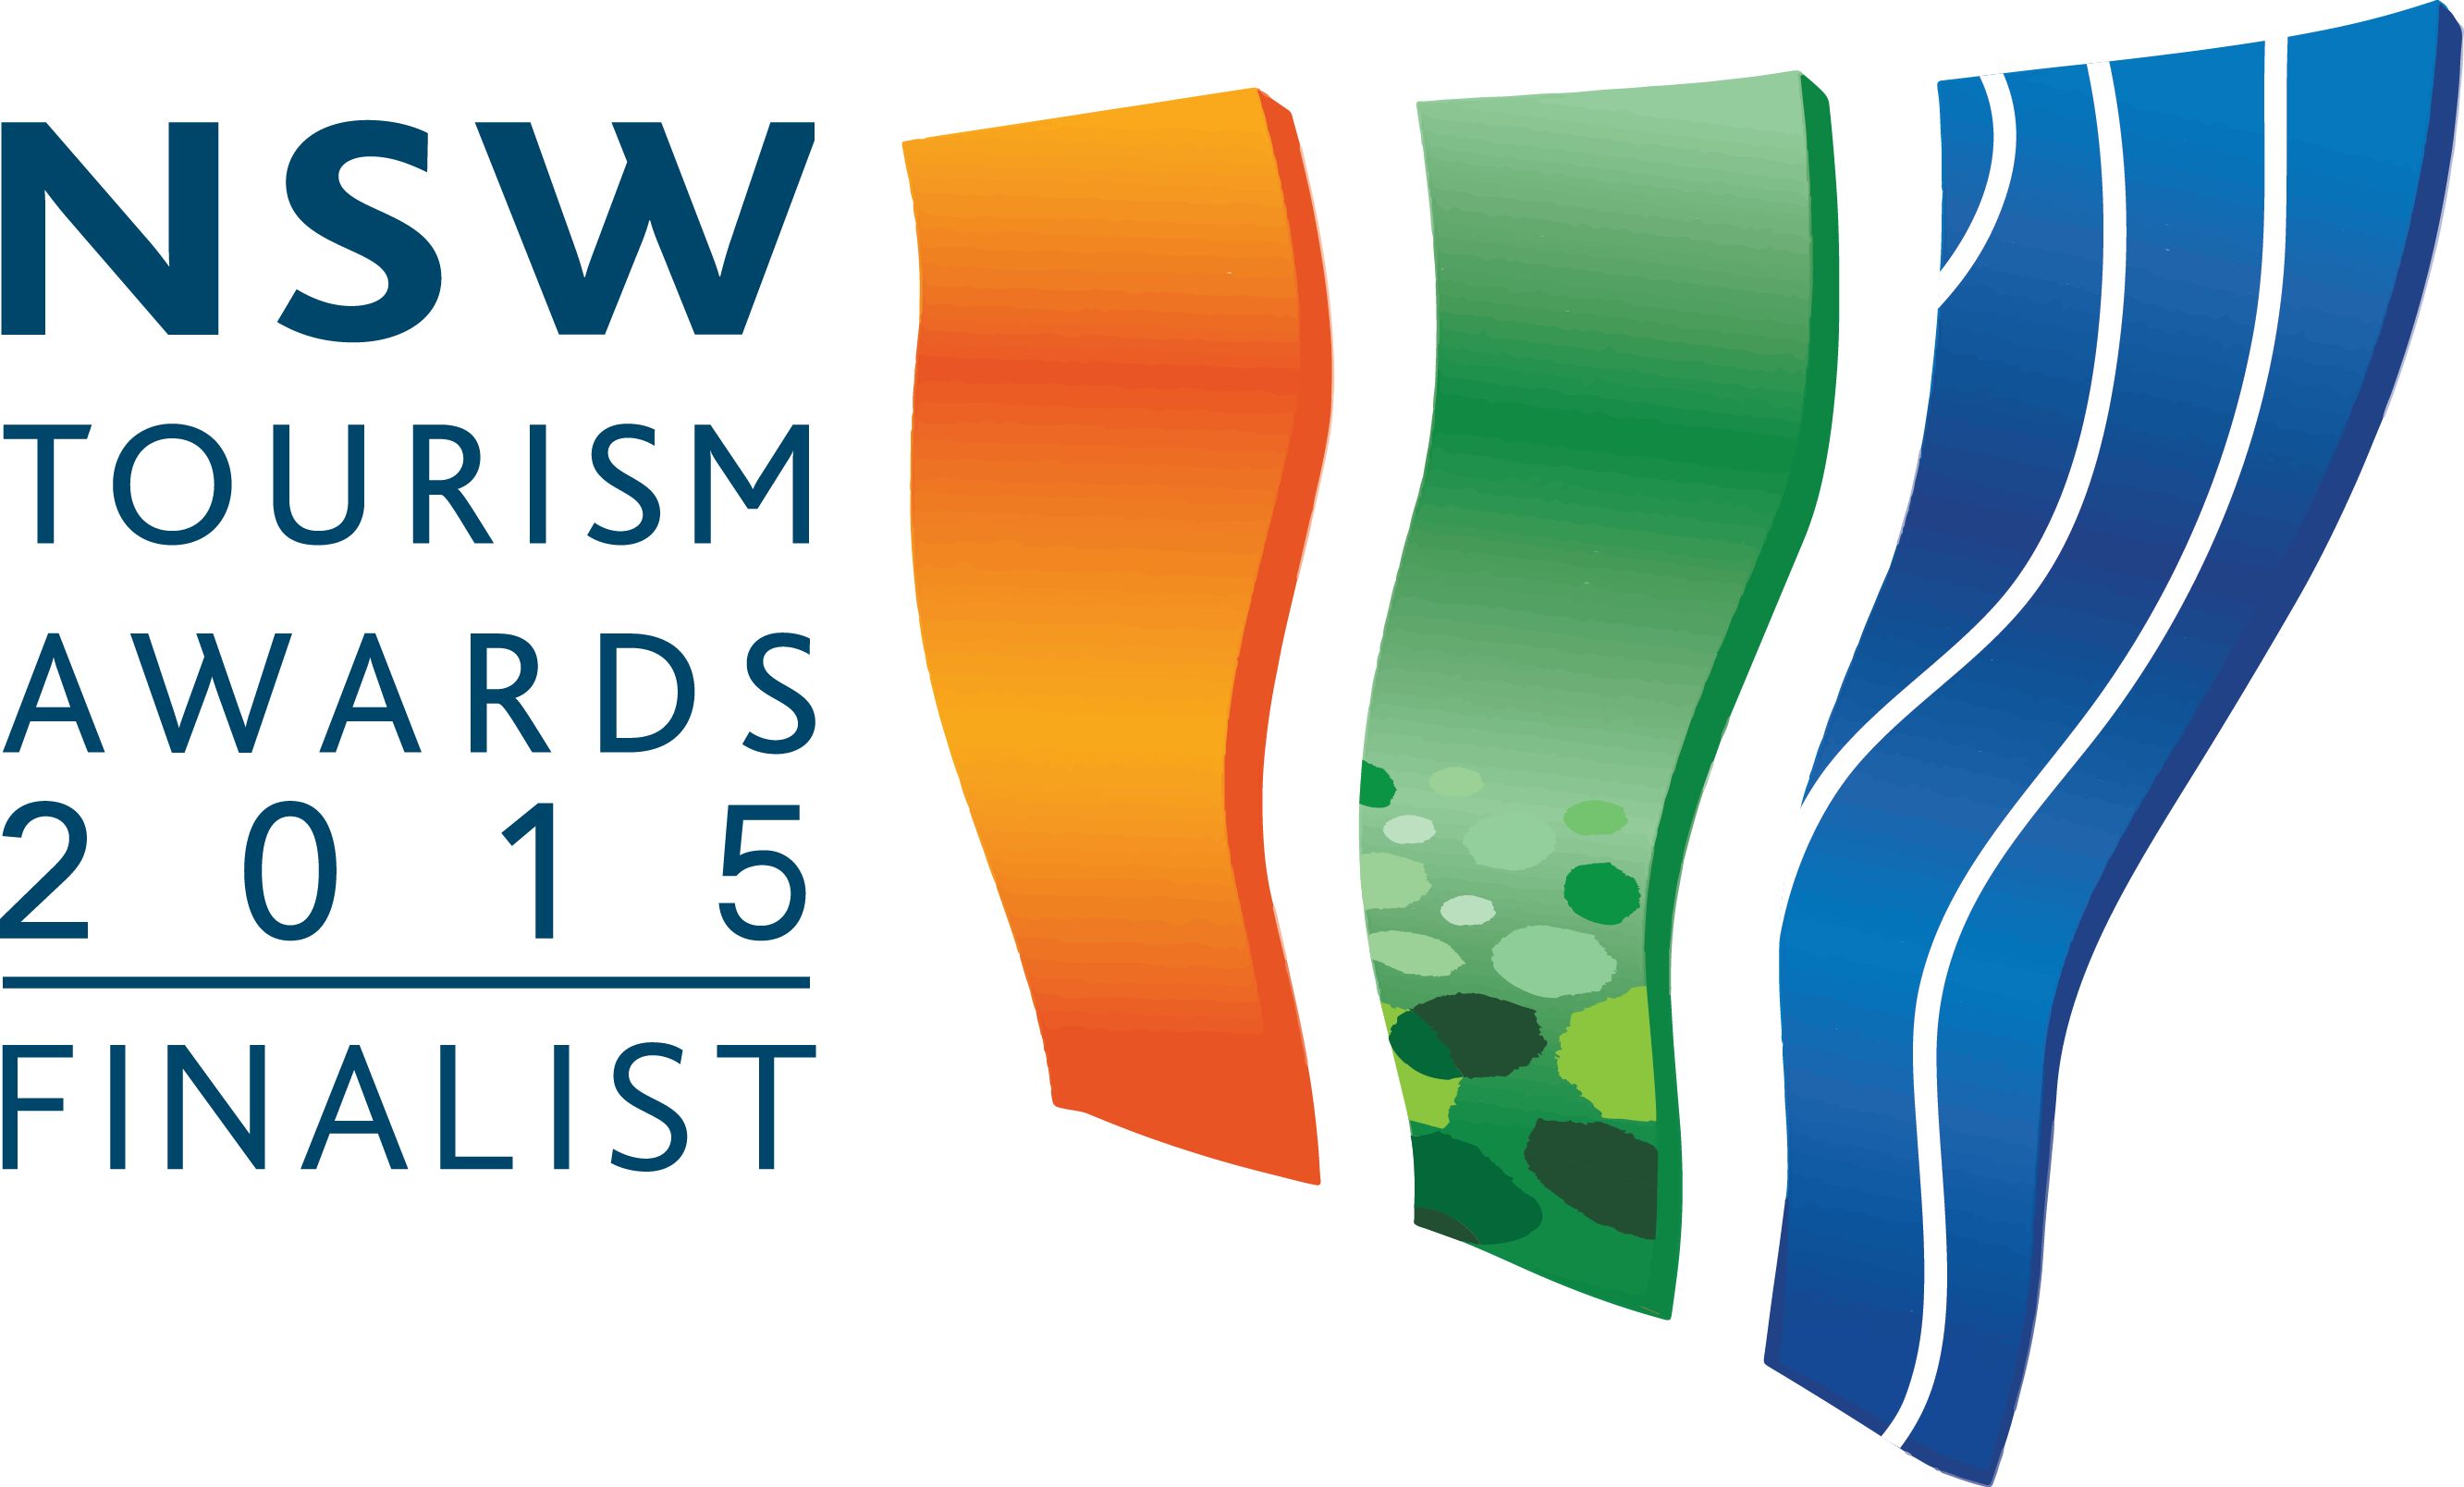 NSW Tourism Awards 2015 Finalist Logo